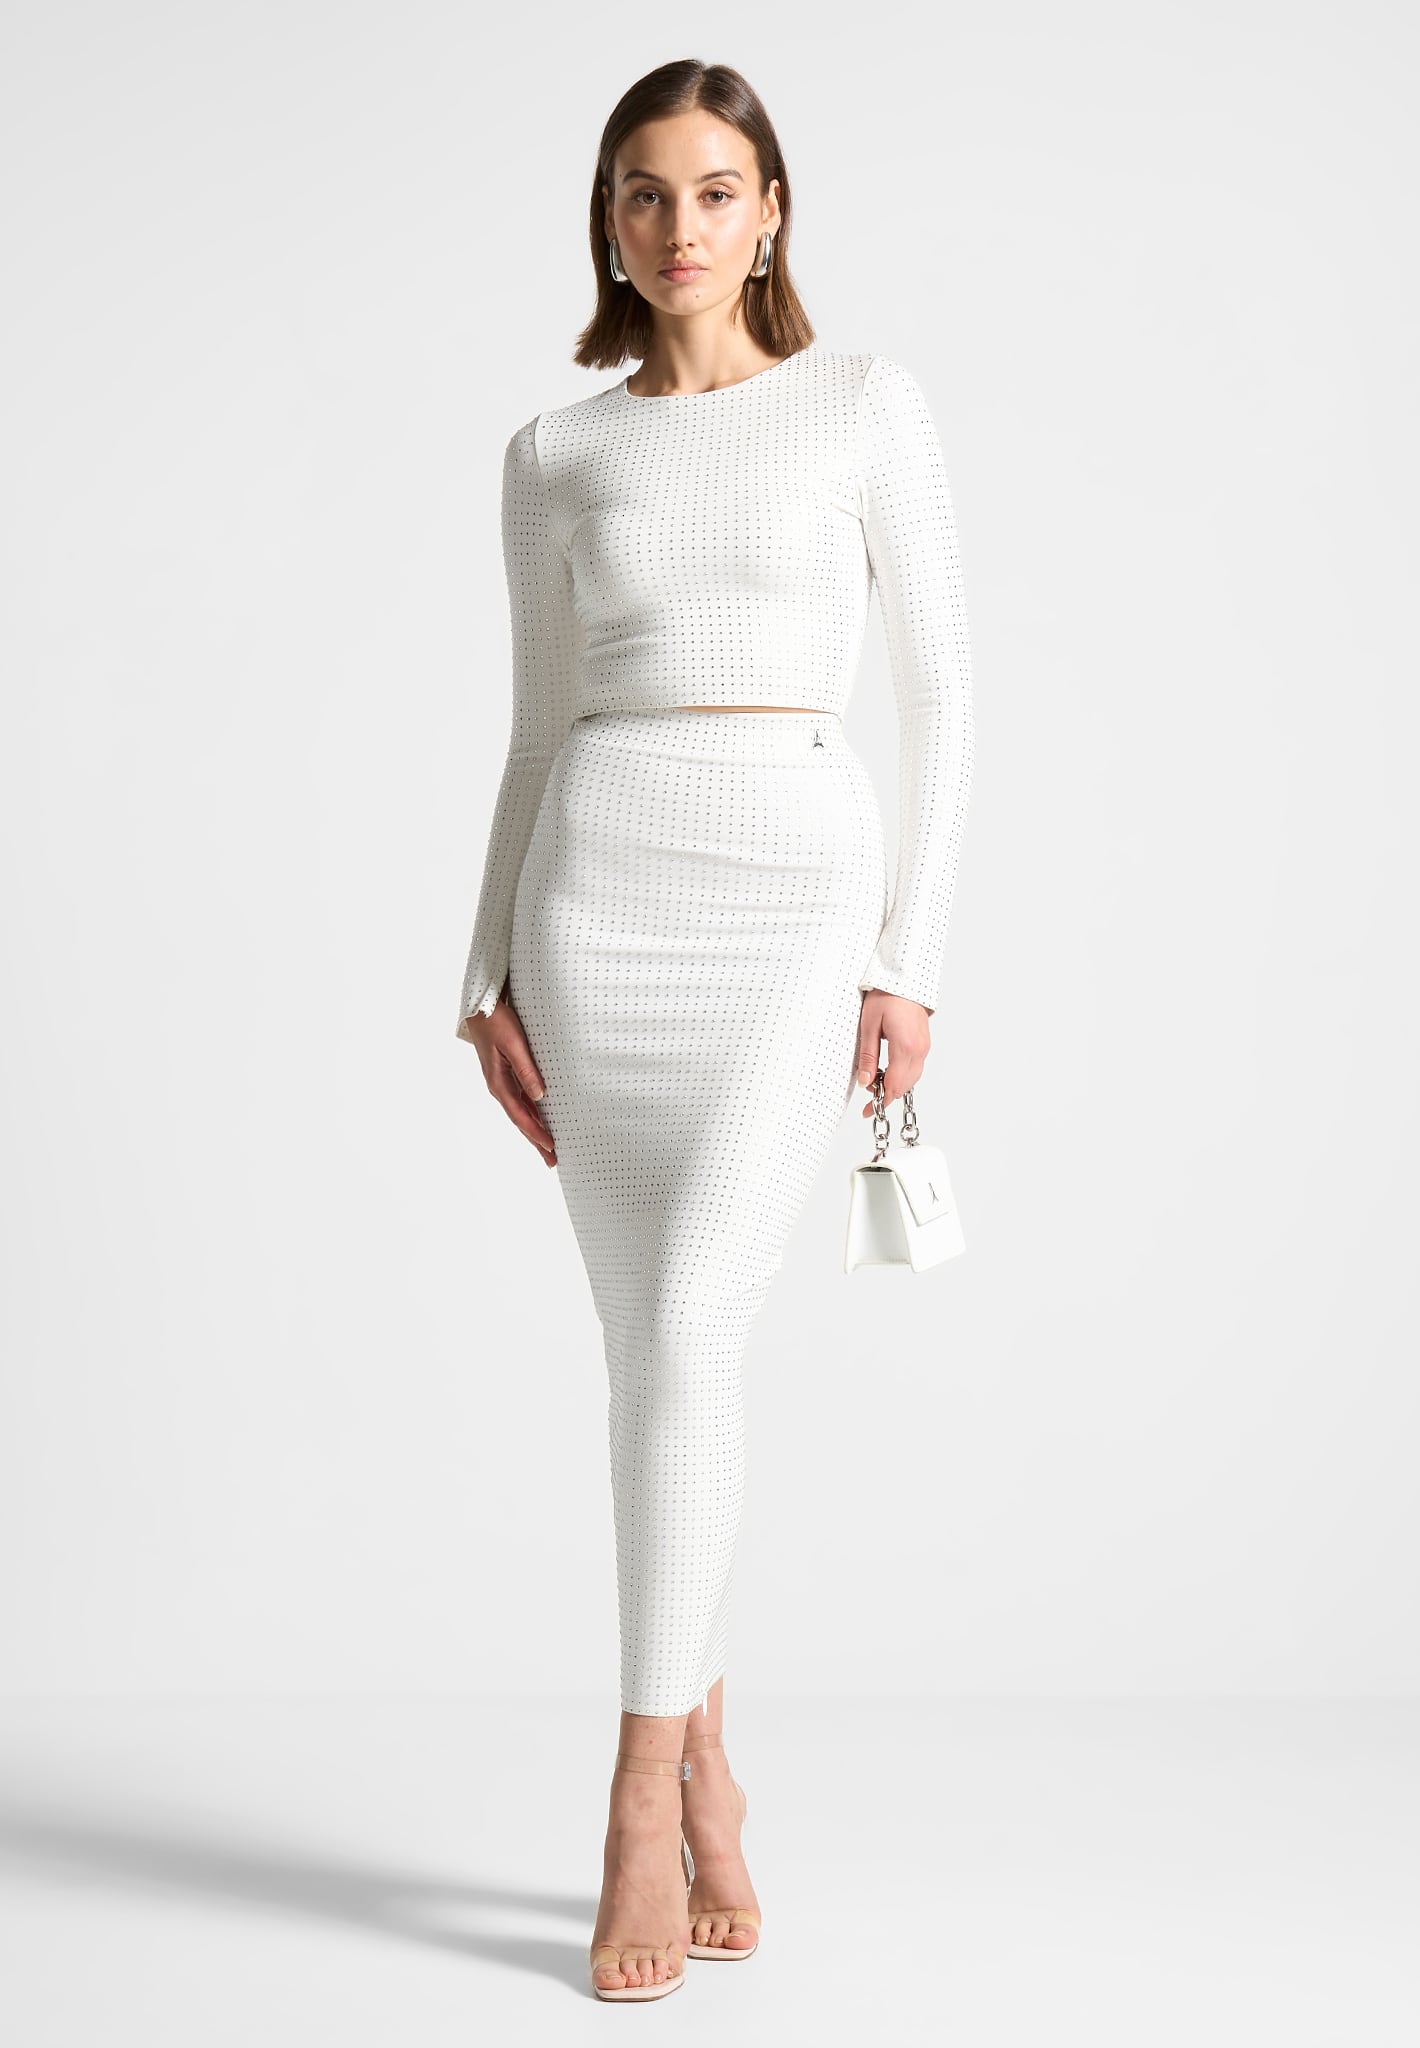 Éternelle Sheer Long Sleeve Bodysuit - White